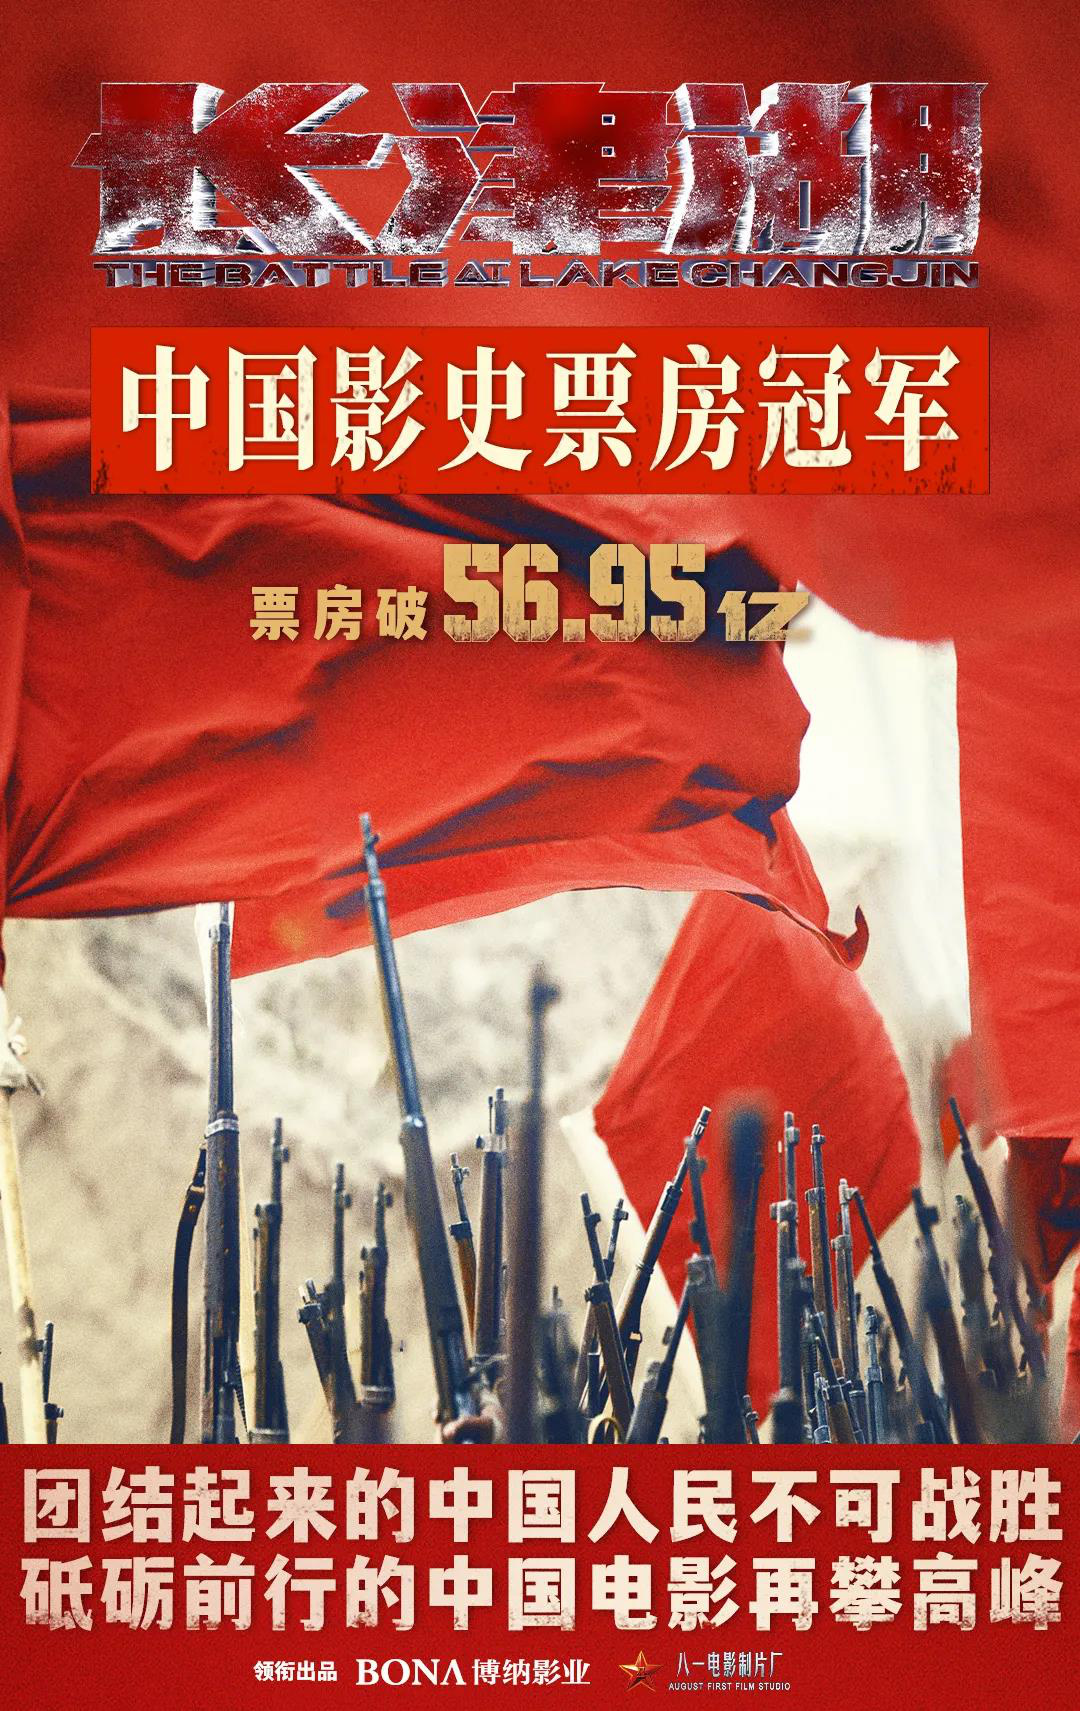 登顶！《长津湖》超《战狼2》成中国影史票房第一